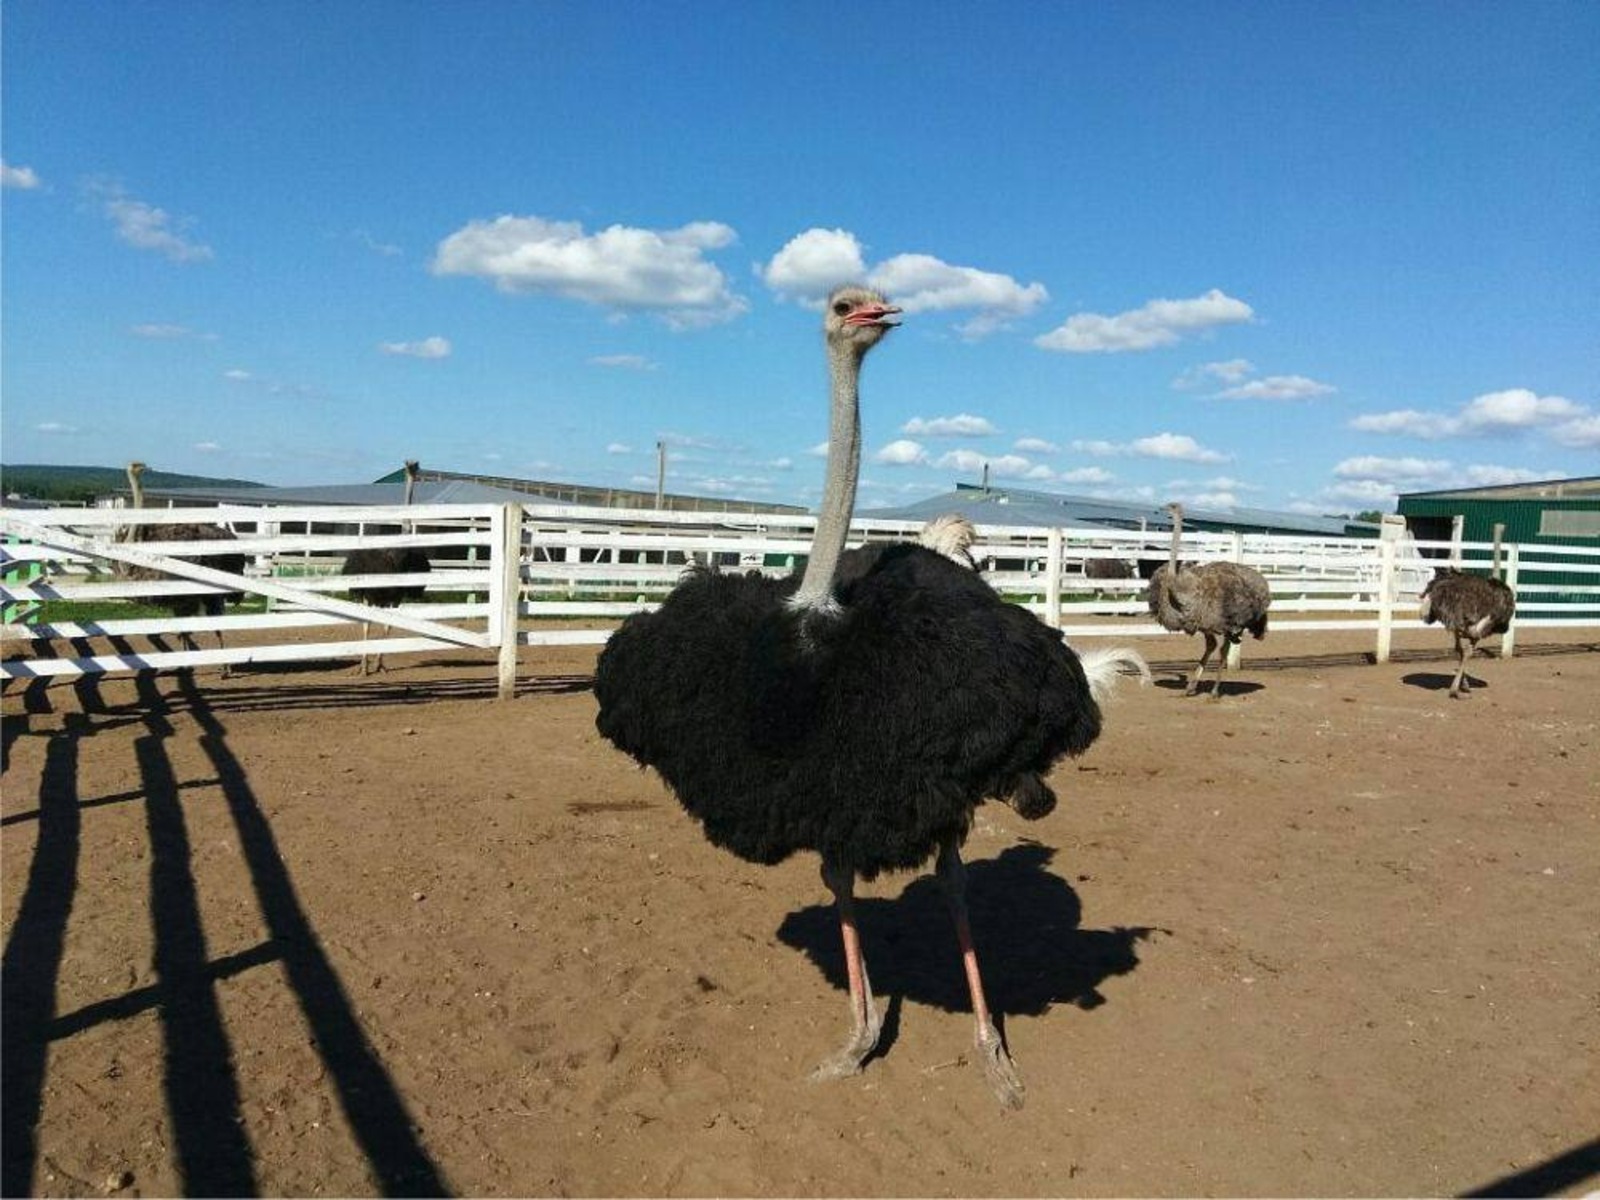 Пушкӑртри страус ферми хуҫисем производство цехӗсене туса хута яма палӑртаҫҫӗ